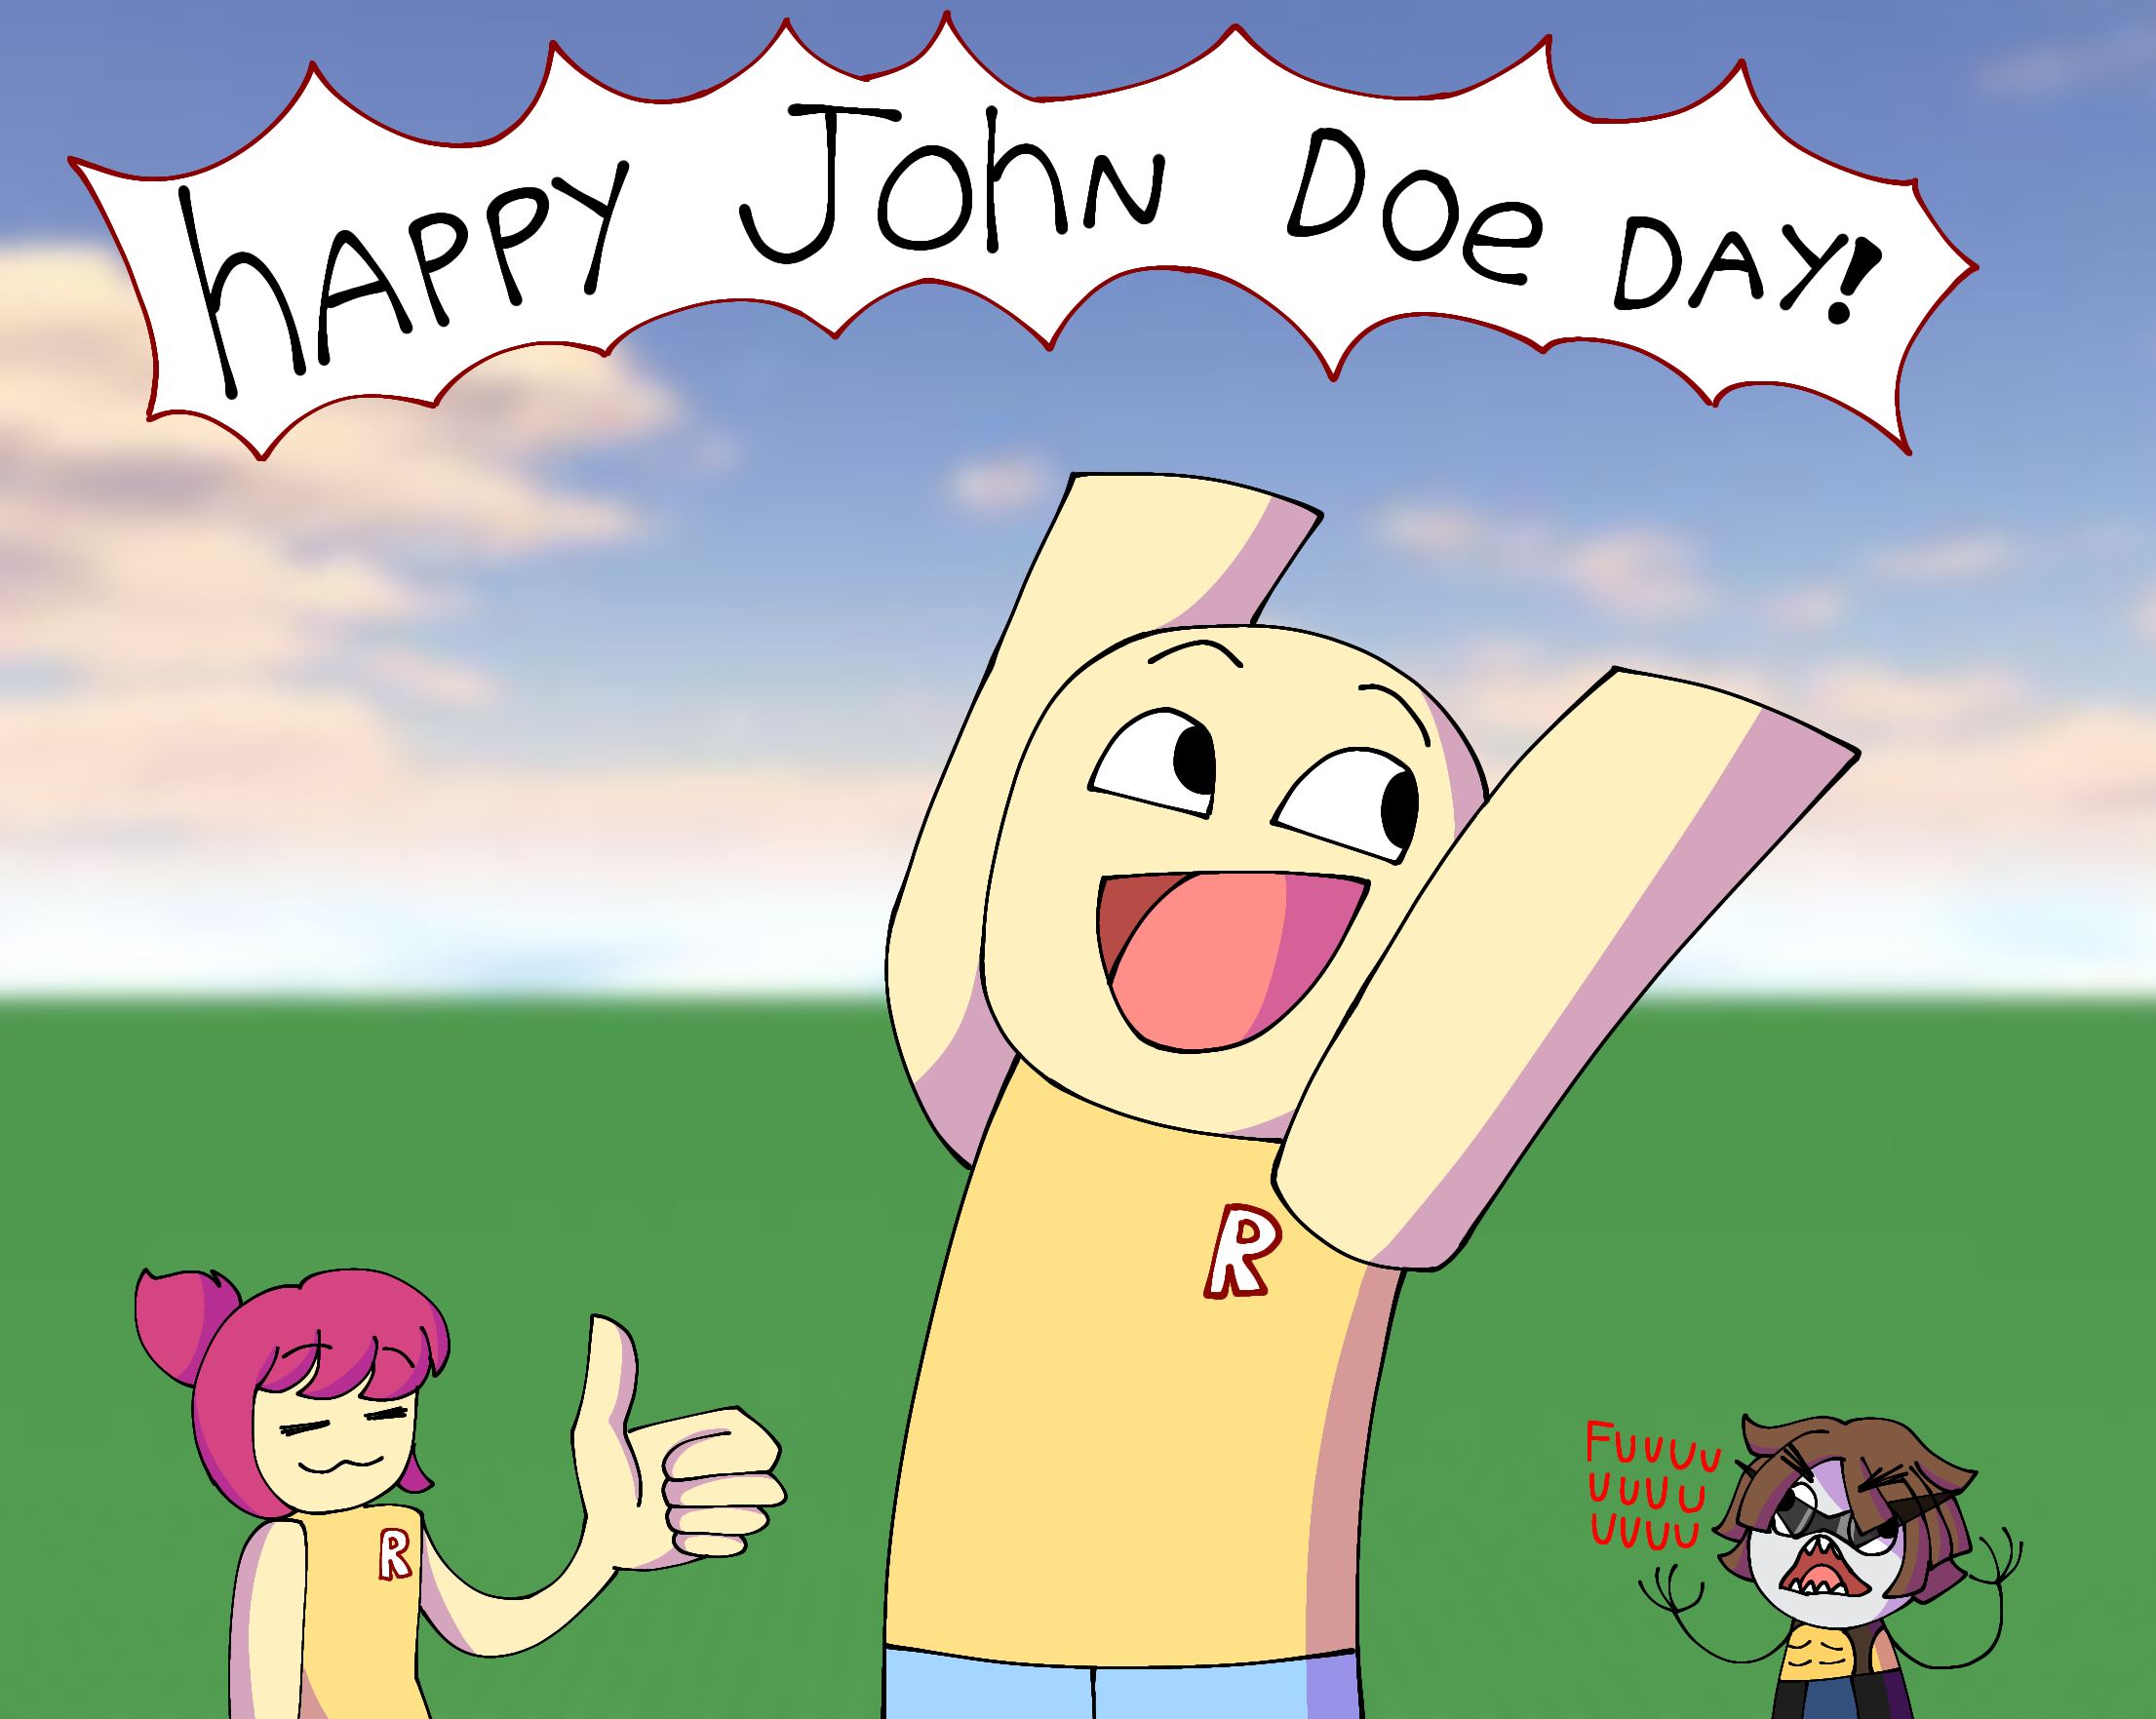 Happy John Doe day!